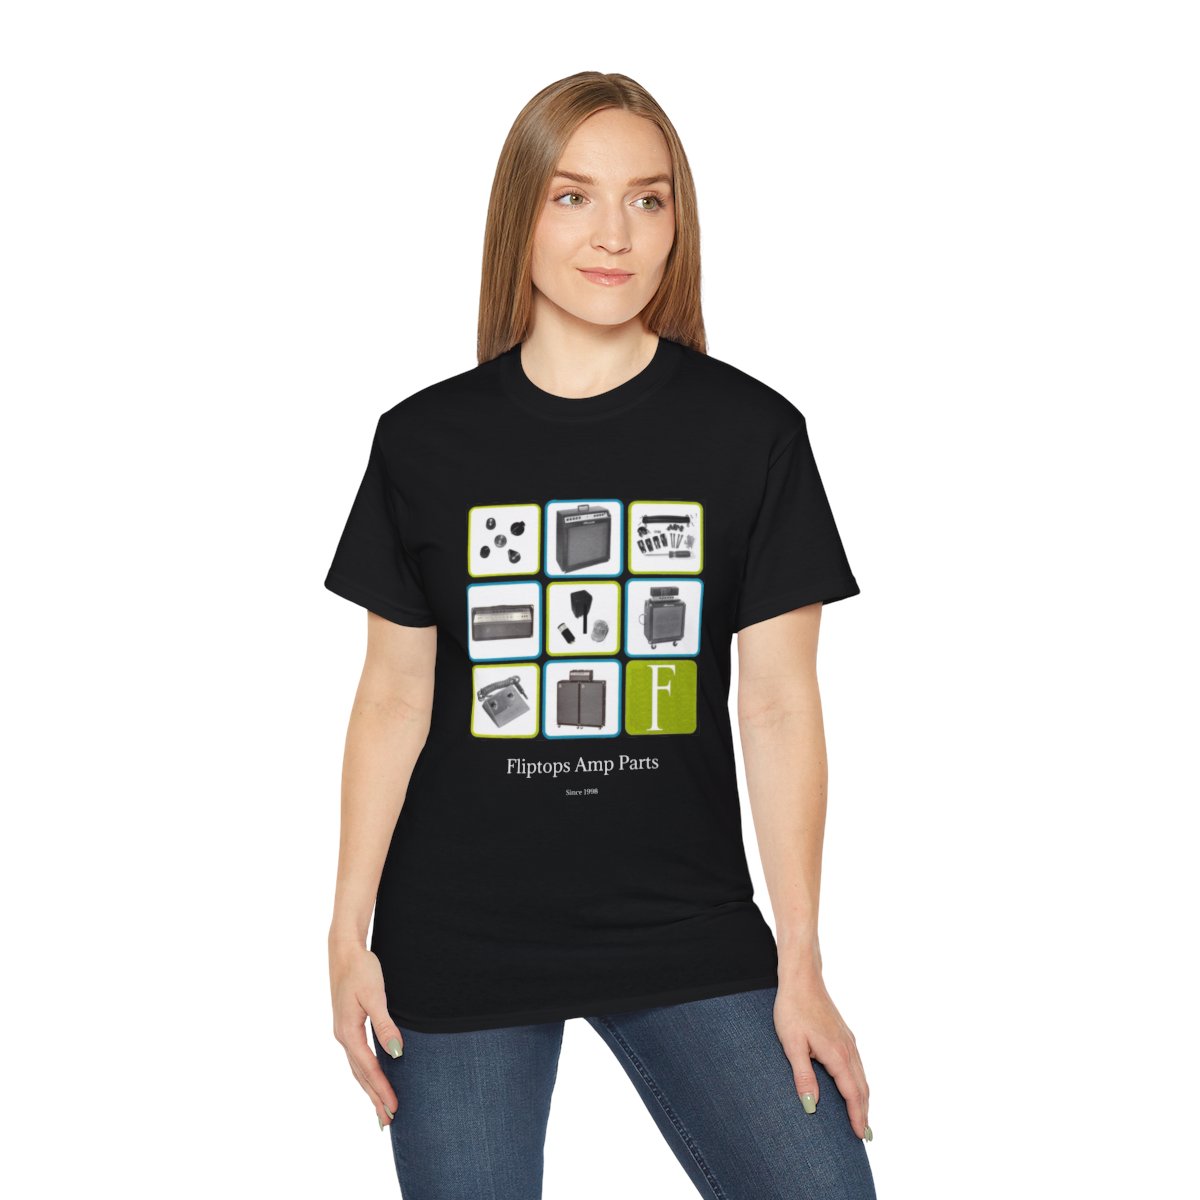 Fliptops anniversary T-shirt Girl